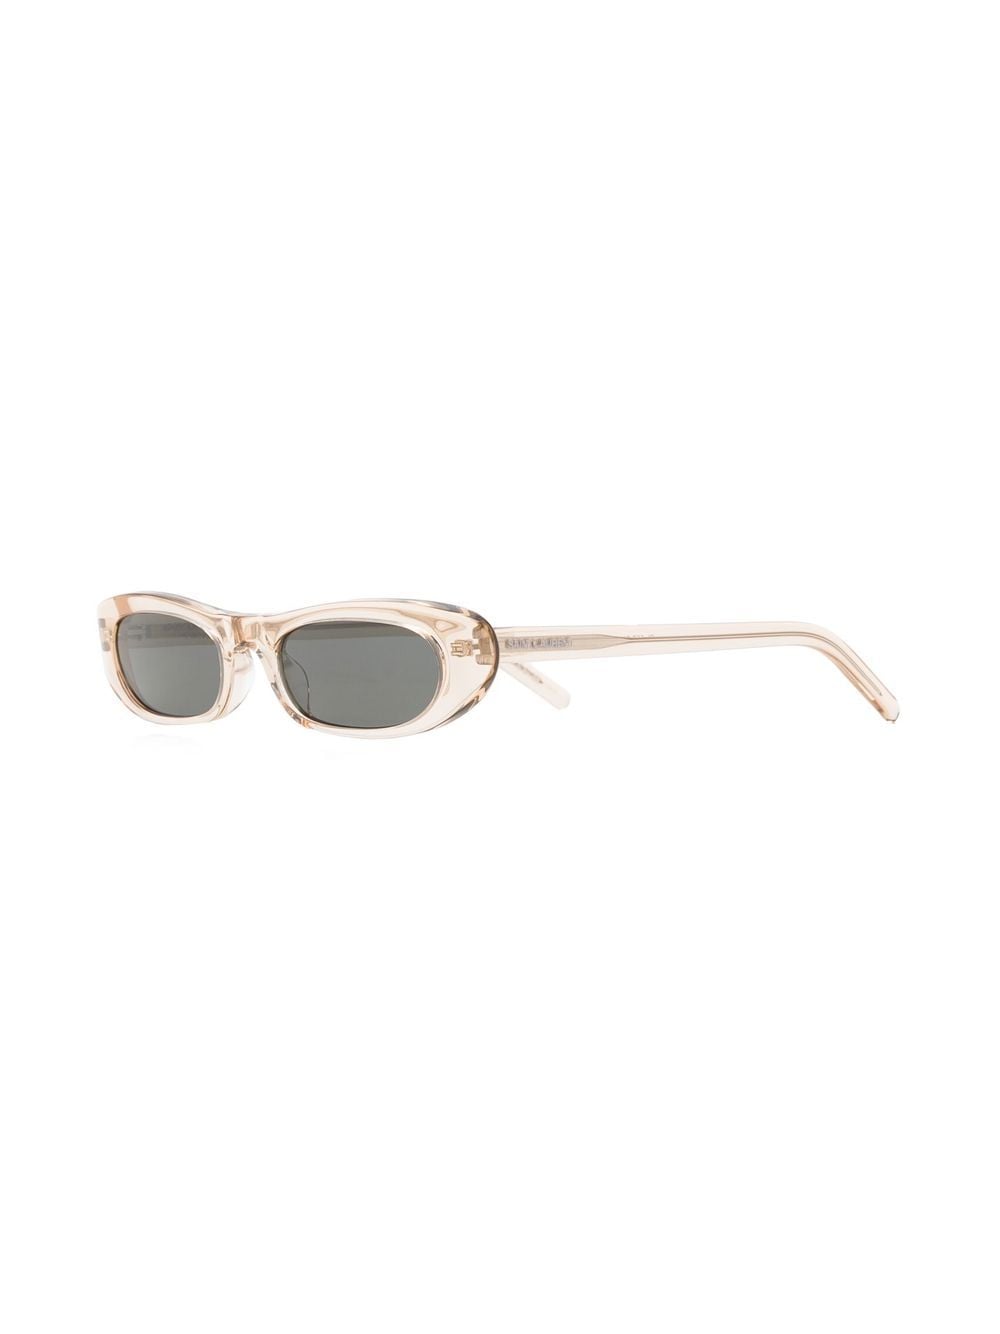 Saint Laurent Eyewear SL 557 zonnebril met ovaal montuur - Beige